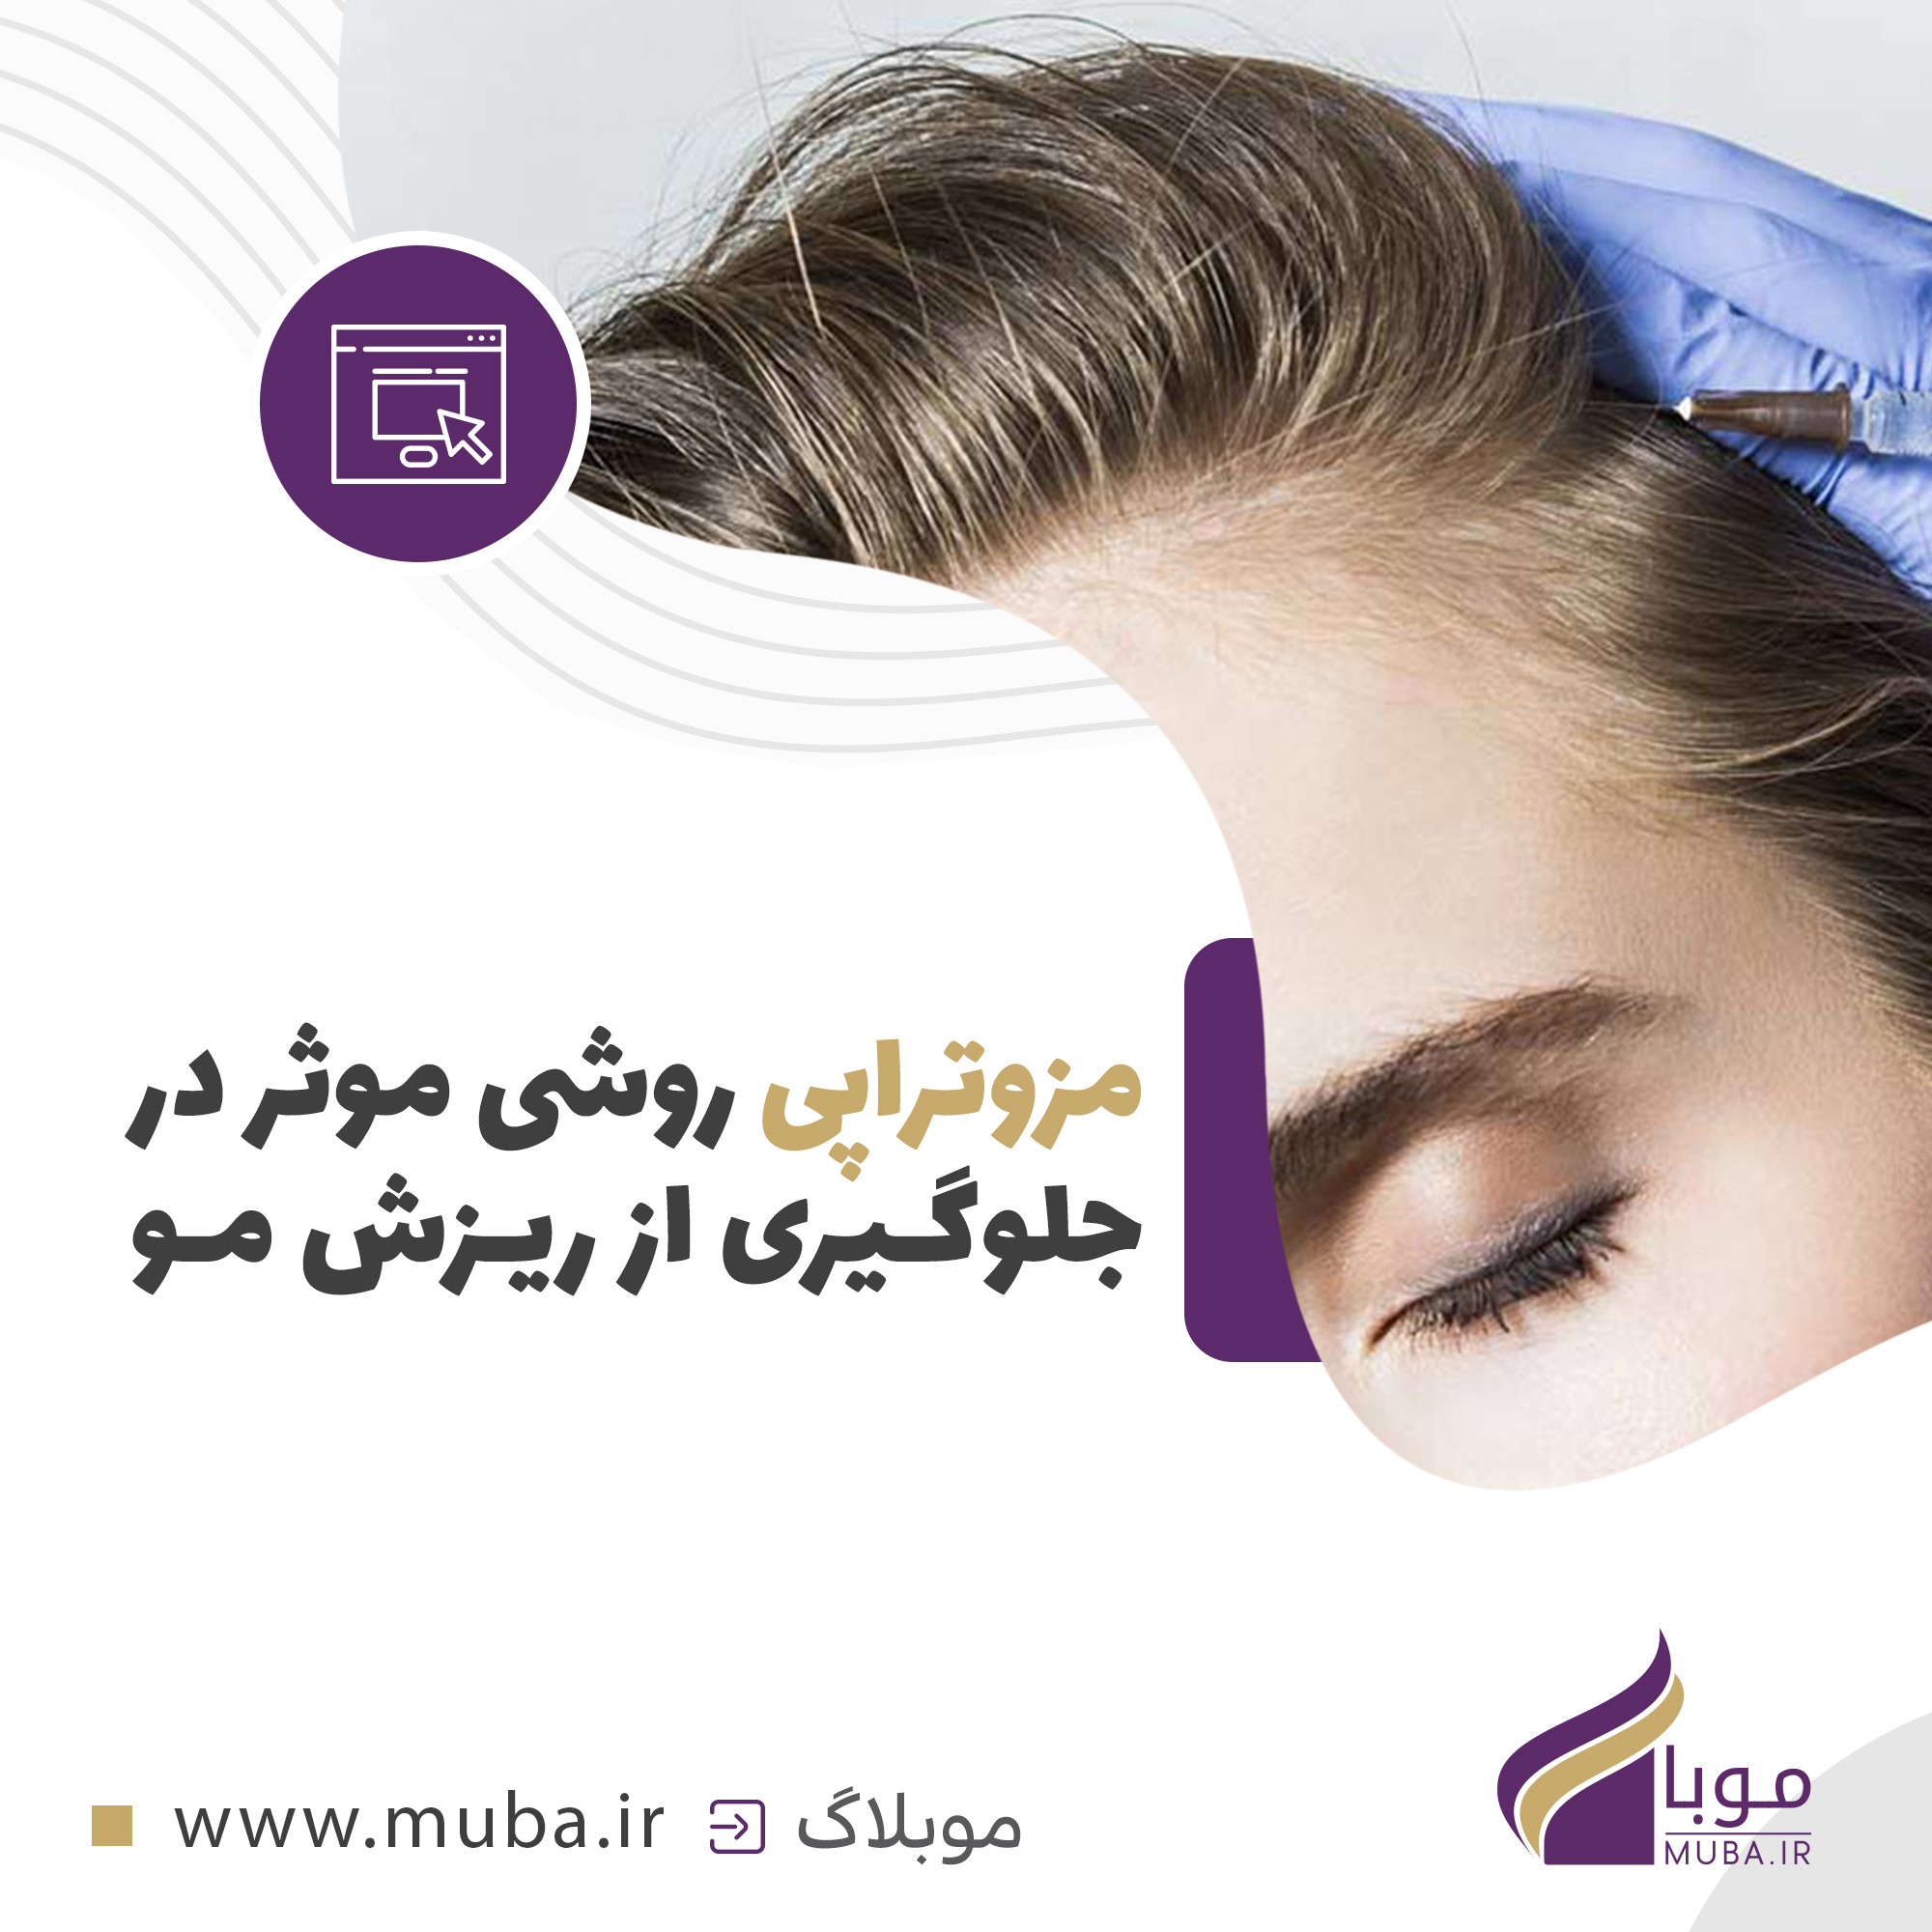 مزوتراپی روشی موثر در جلوگیری از ریزش مو